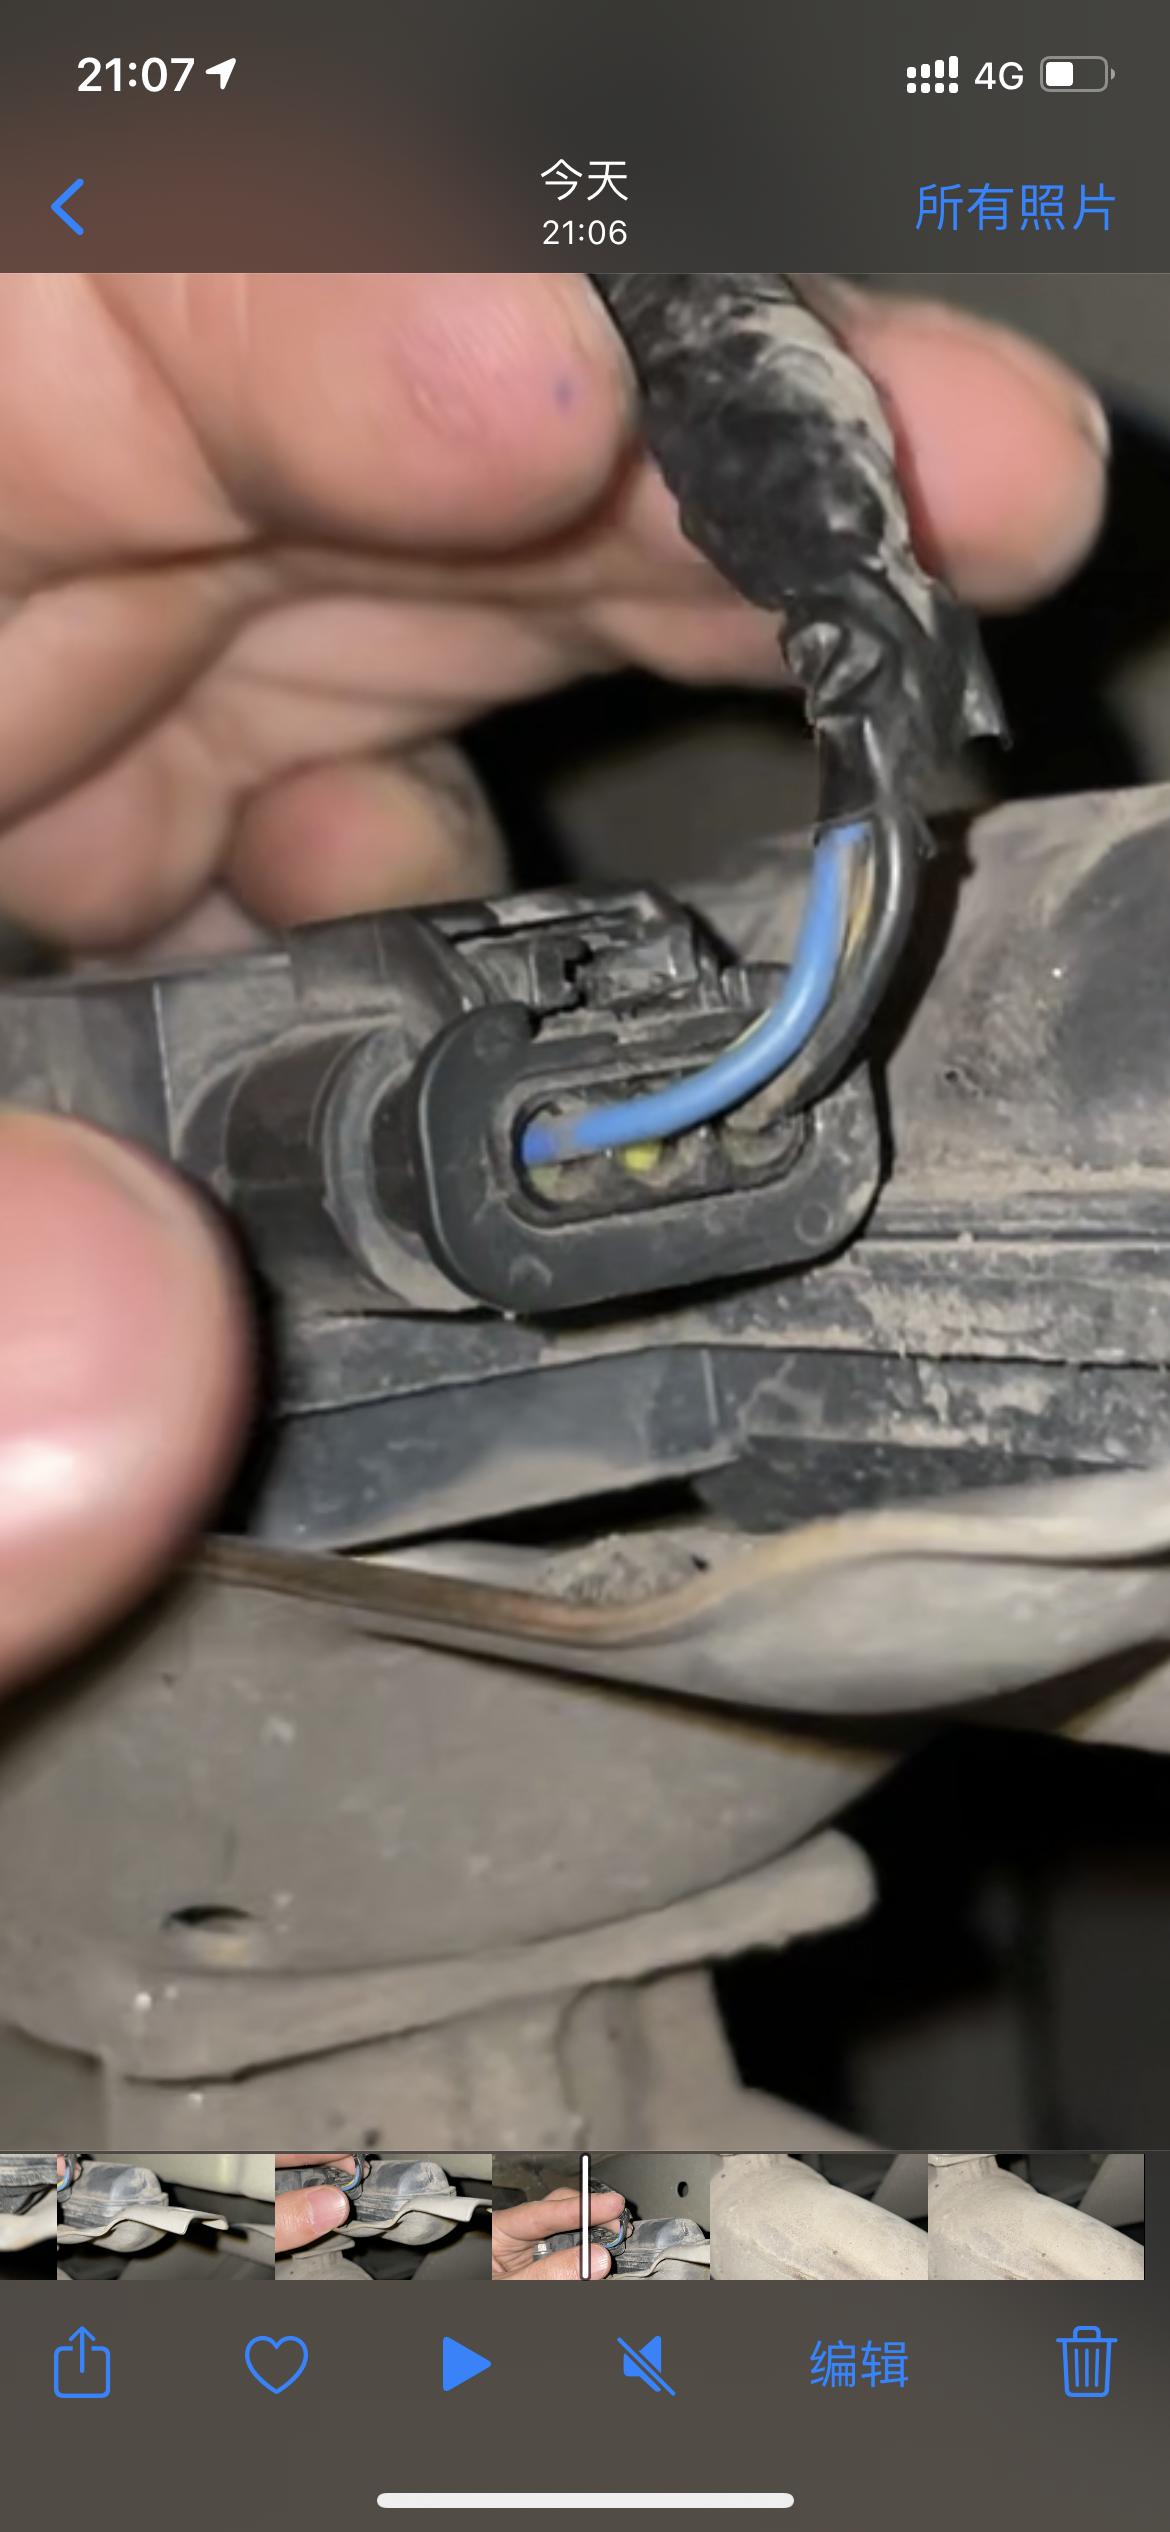 领克03 03+ 排气阀门的插头怎么拔下来？买了排气阀门开关，需要拔这个插头，但一直拔不下来，这个应该怎么拔